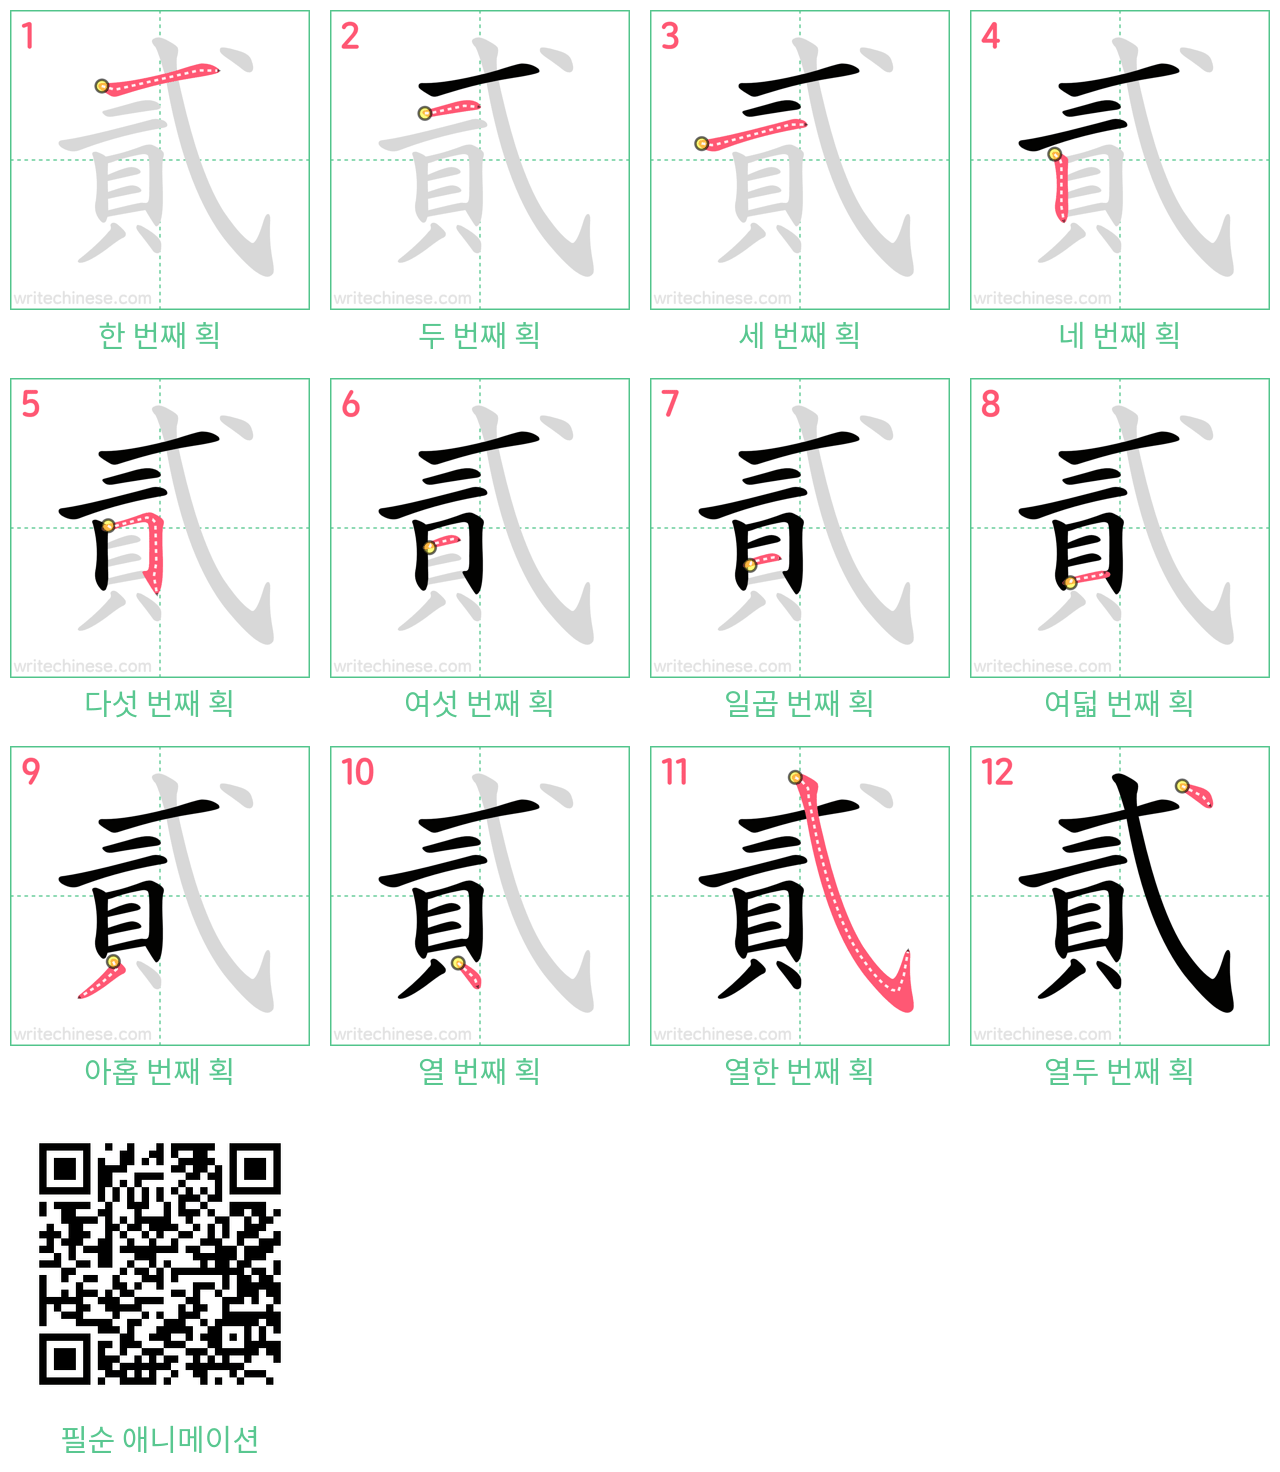 貳 step-by-step stroke order diagrams